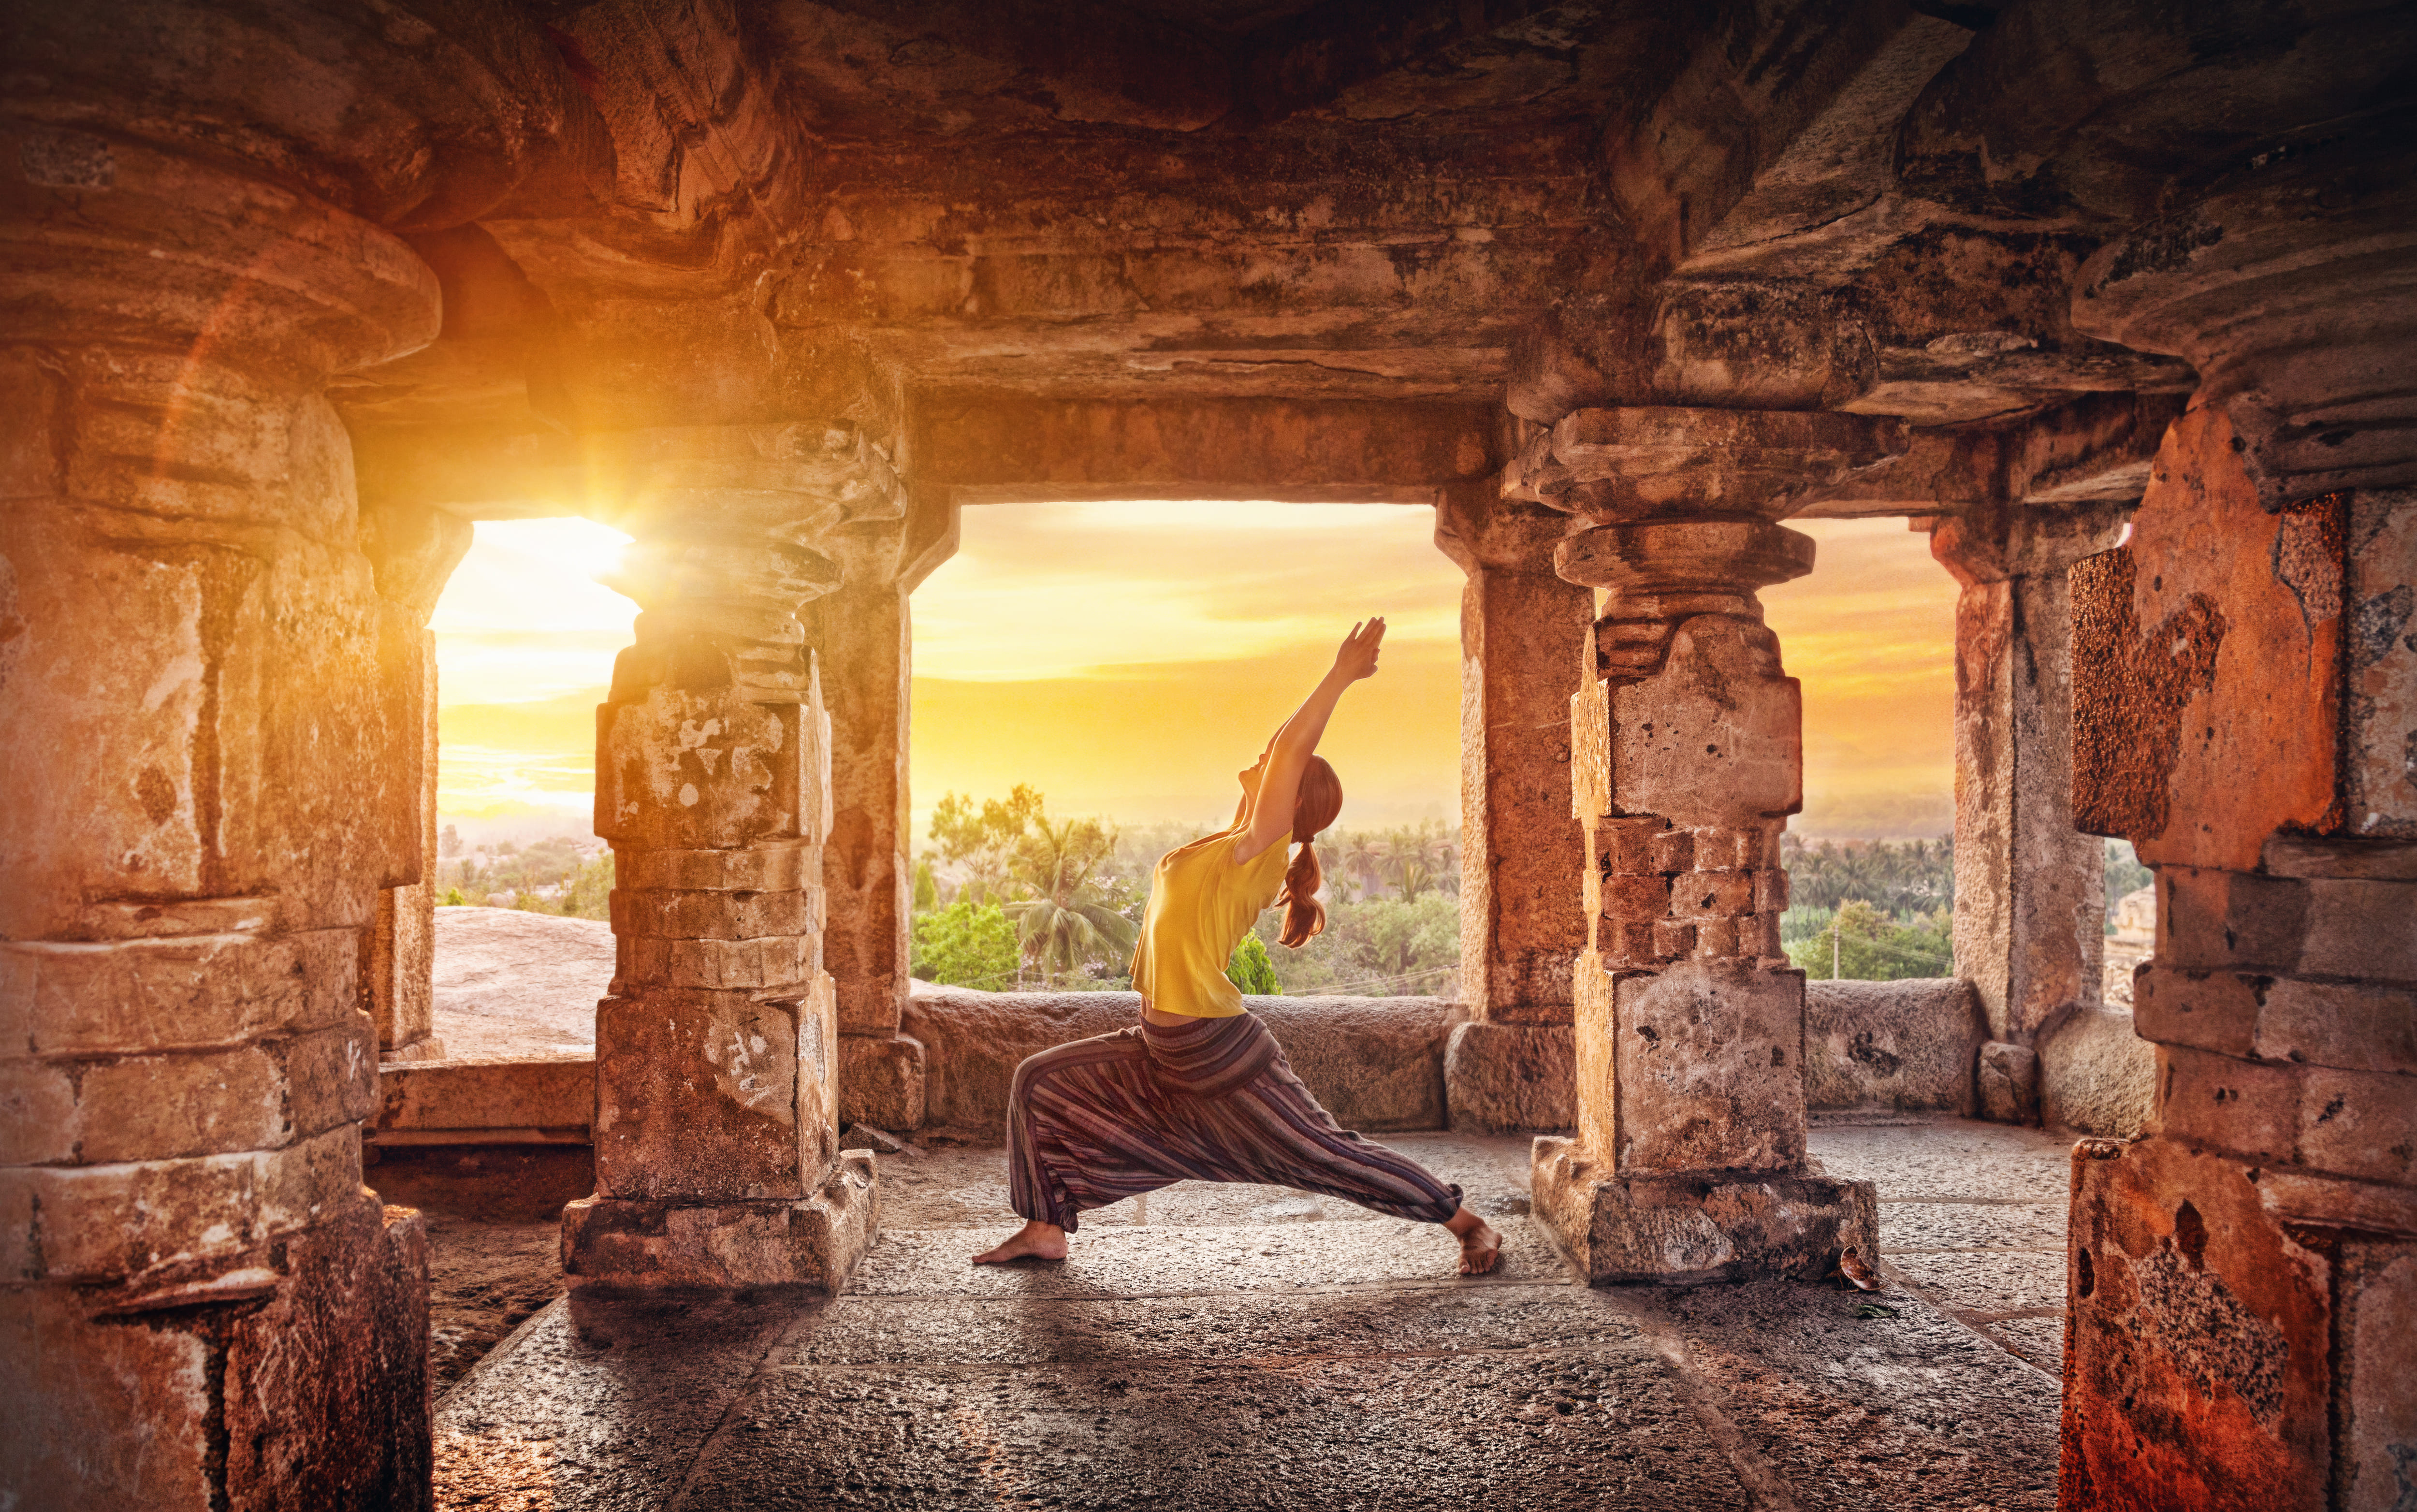 Frau entspannt sich beim Yoga. Im Hintergrund sieht man einen Sonnenuntergang. Reisearten, wie Entspannen, werden hier dargestellt